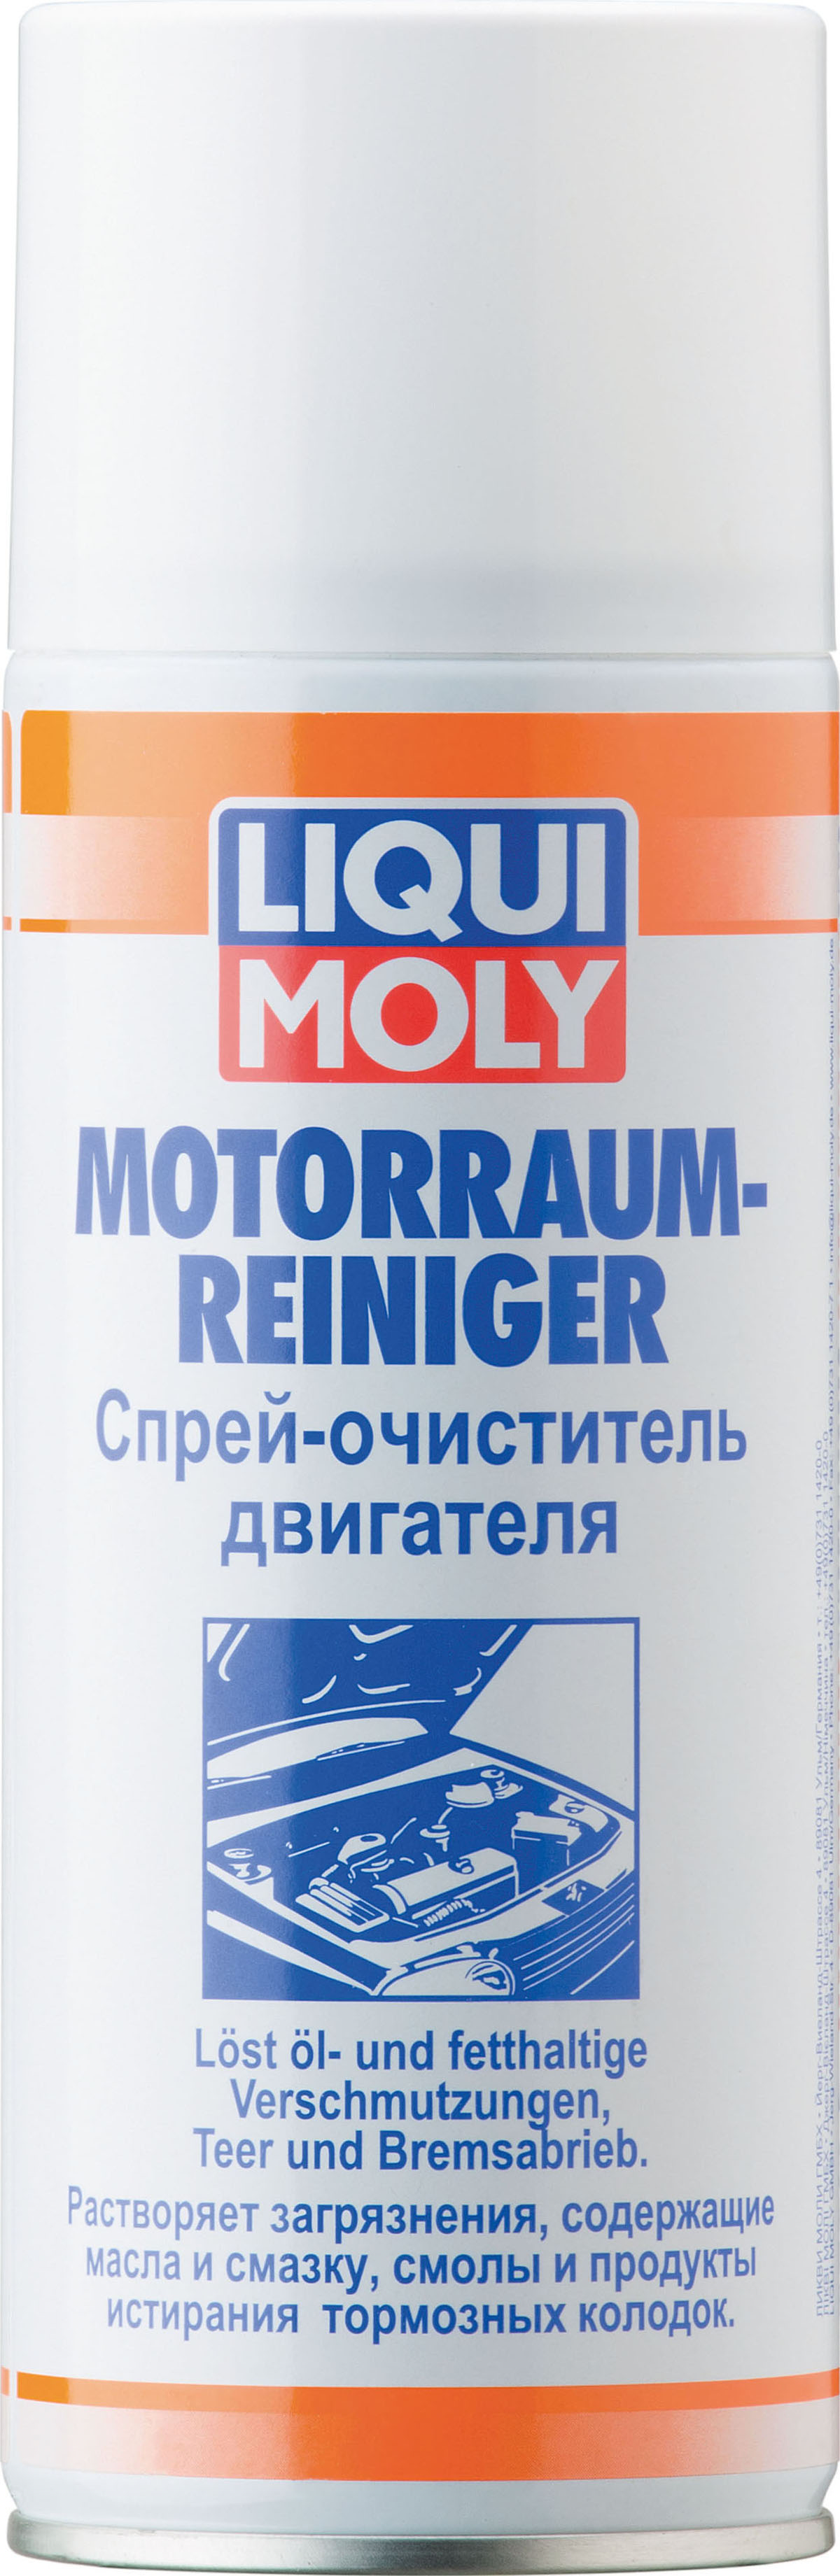 Спрей-очиститель двигателя LIQUI MOLY Motorraum-Reiniger (0,4 литра)